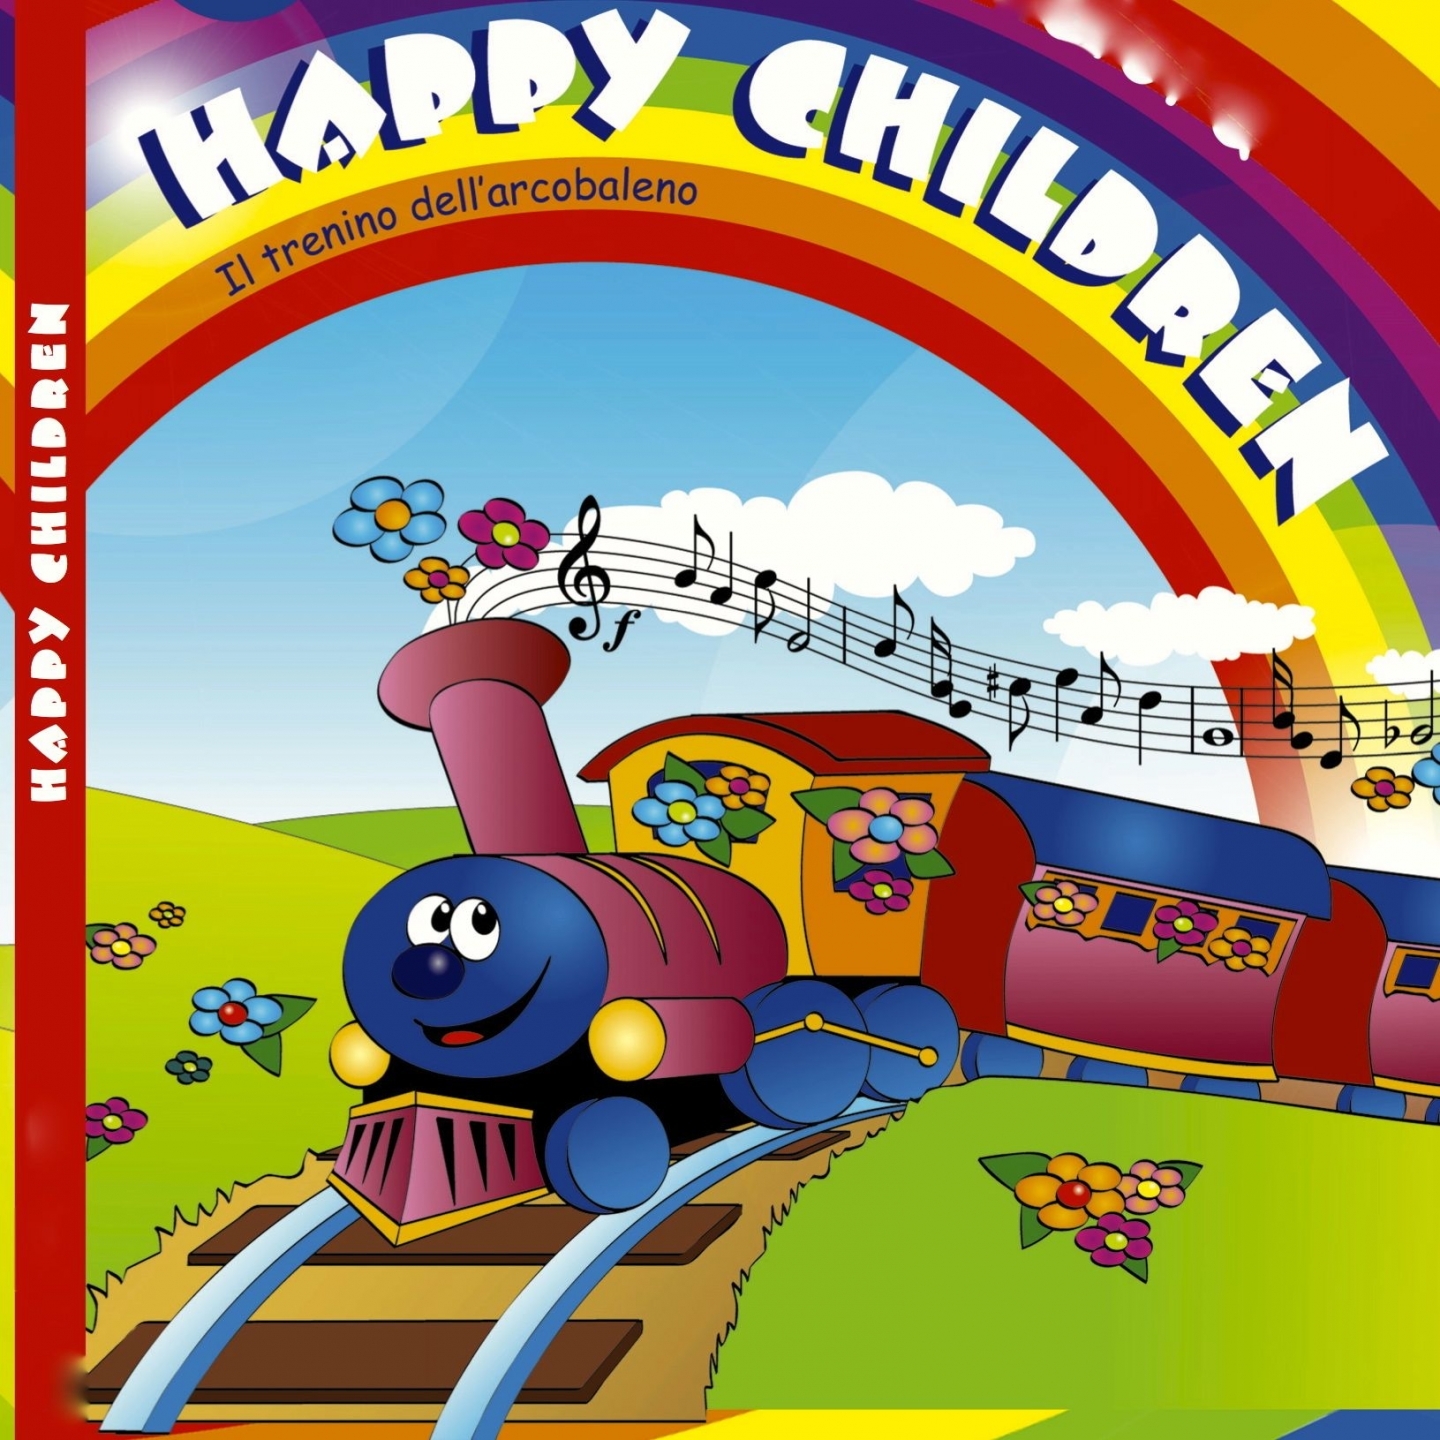 Happy Children: il trenino dell'arcobaleno (Ecosound musica per bambini)